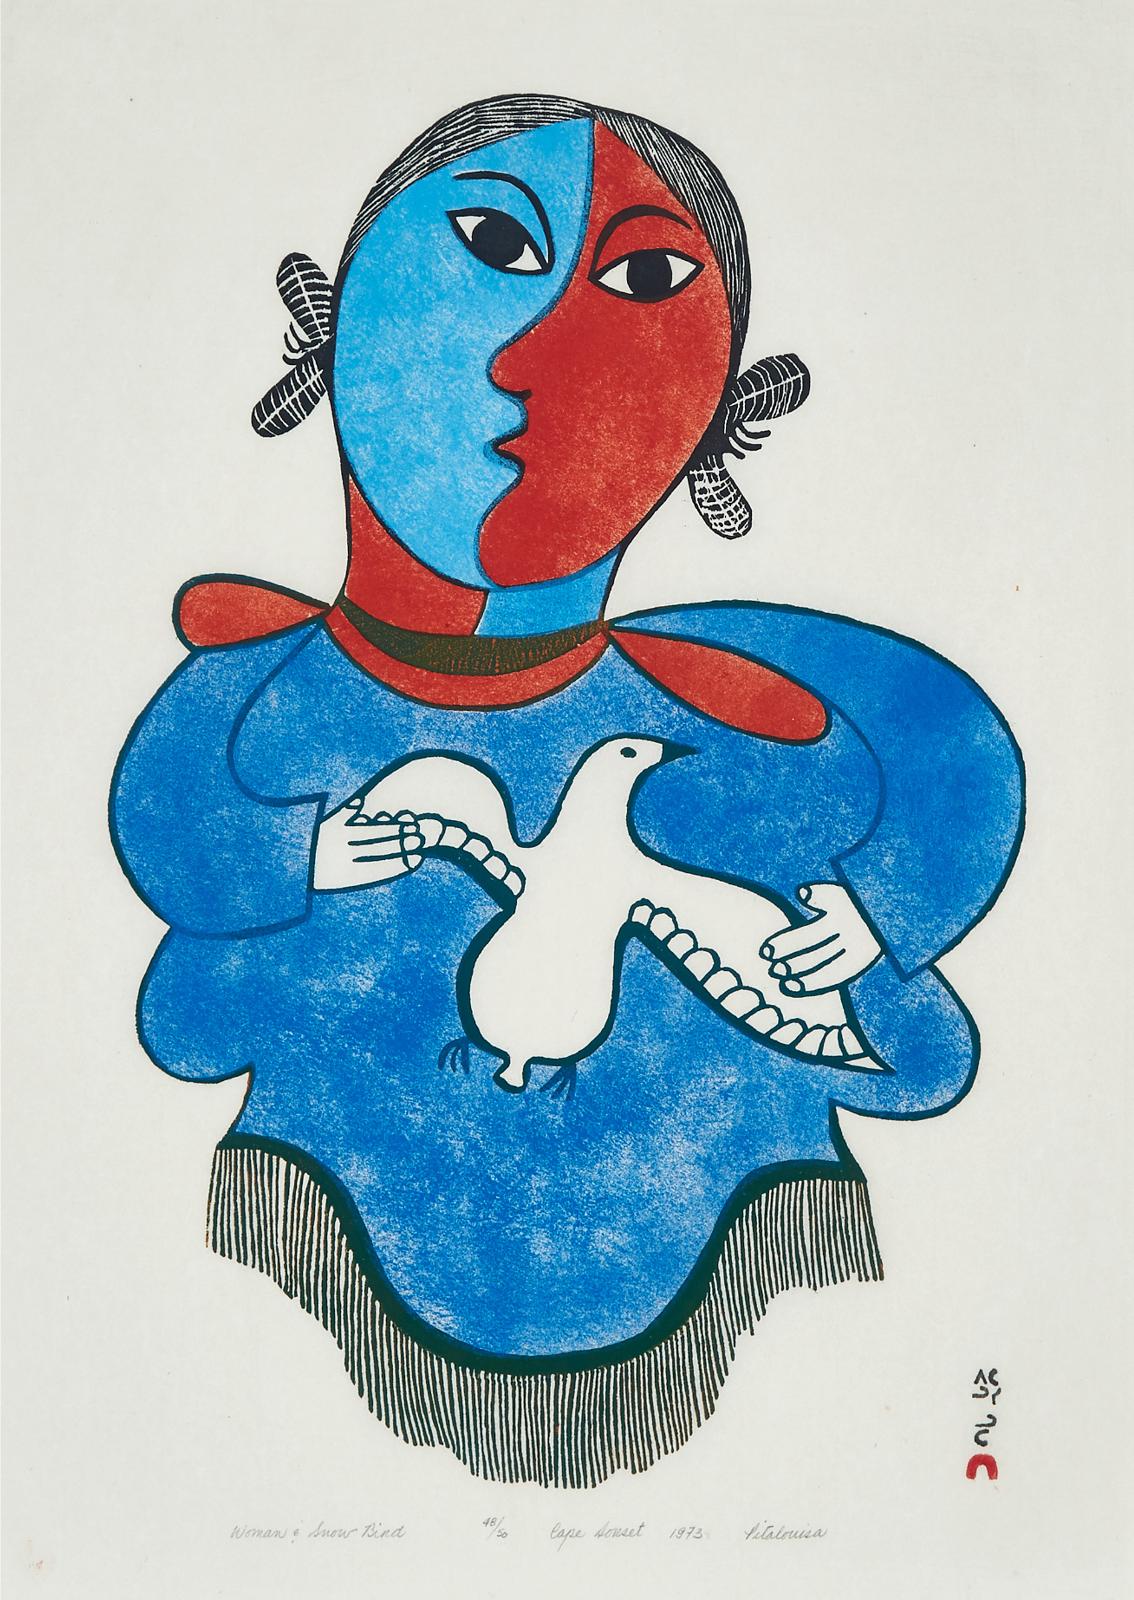 Pitaloosie Saila (1942-2021) - Woman & Snow Bird